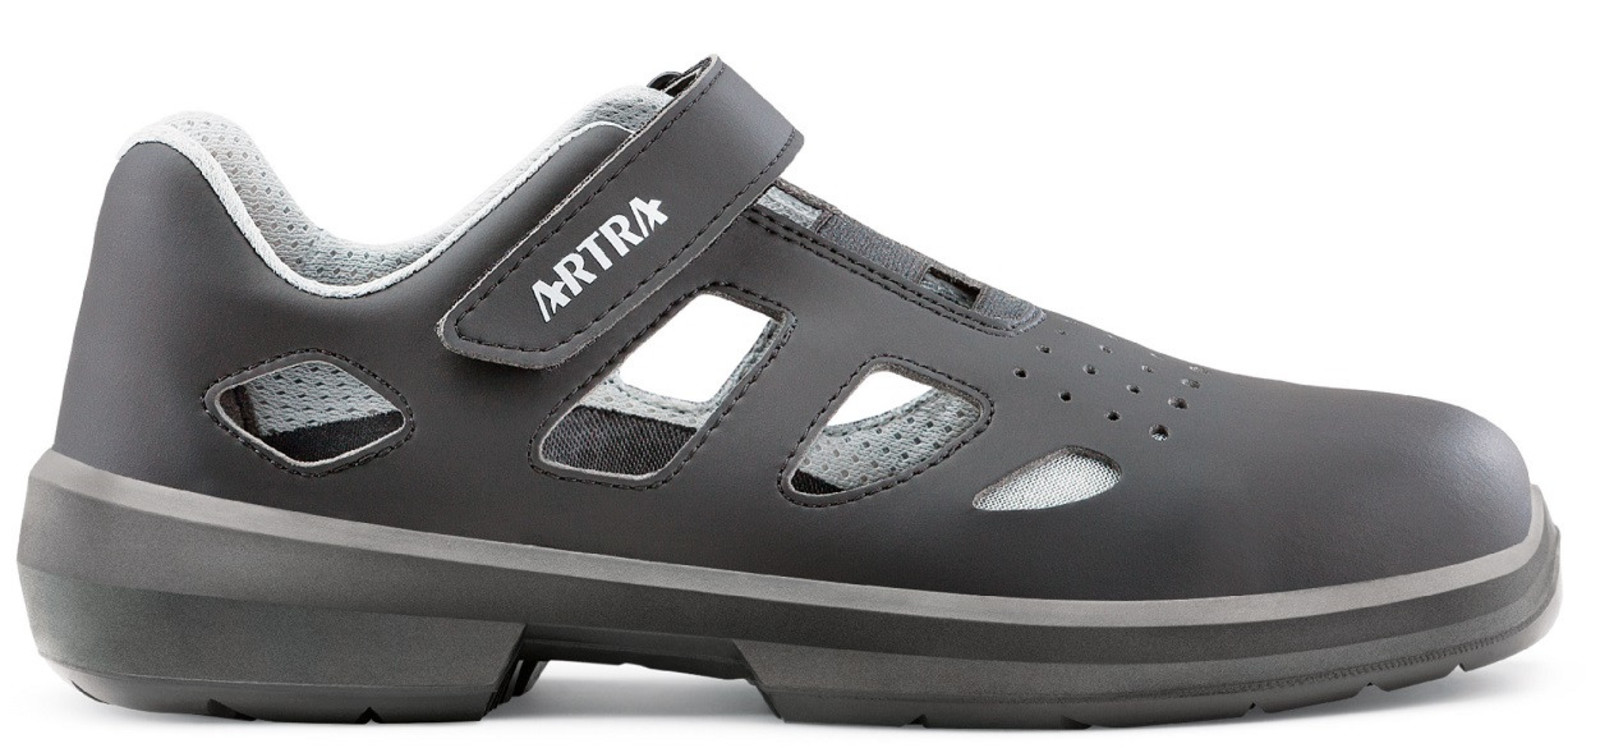 Bezpečnostné sandále Artra Ario 801 671460 S1P - veľkosť: 48, farba: čierna